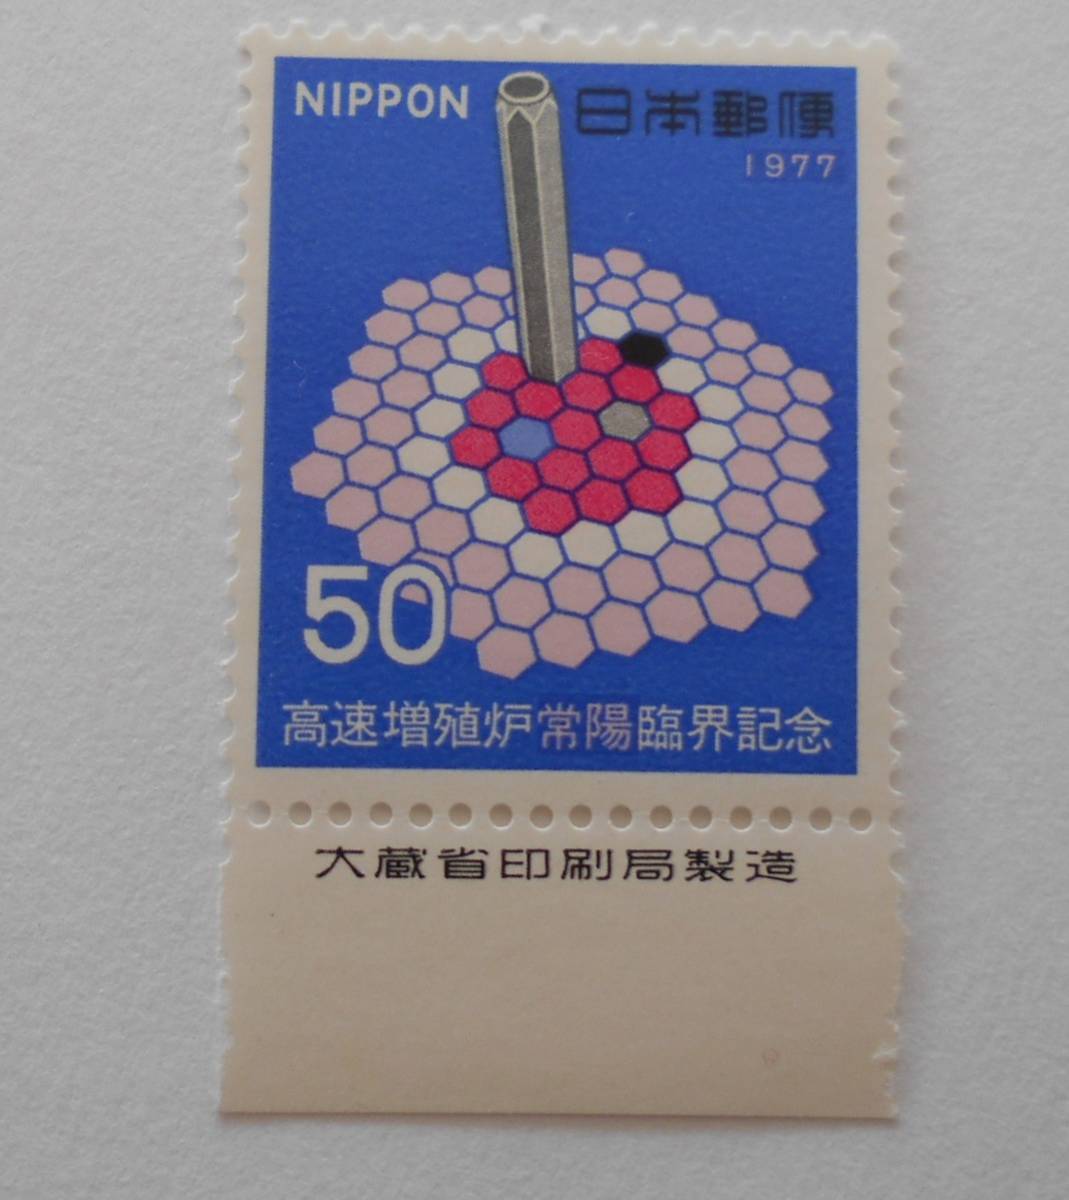 銘版付き高速増殖炉常陽臨界記念 1977 未使用50円切手の画像1